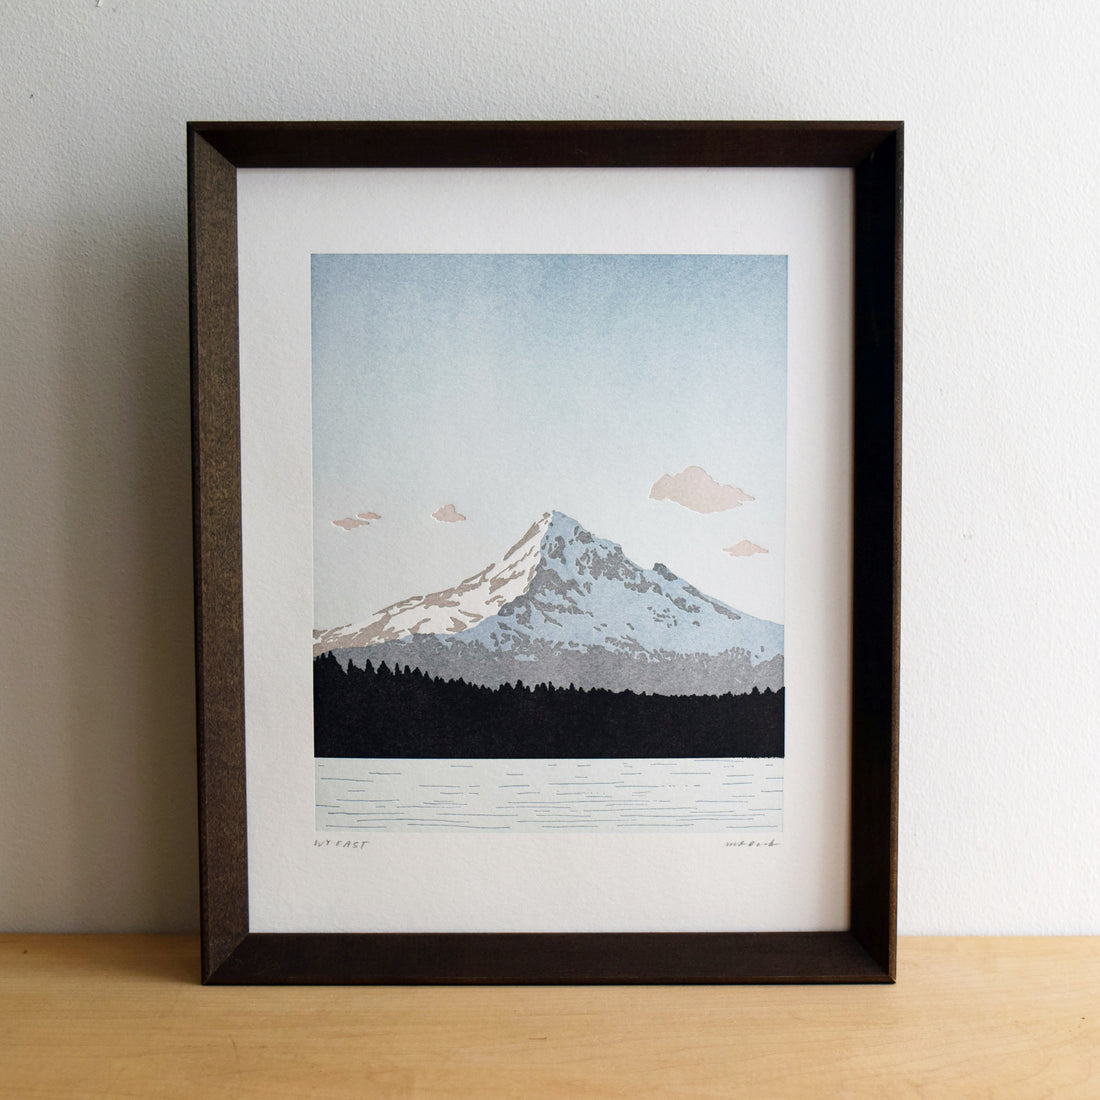 Wyeast (Mount Hood) from Lost Lake, Letterpress Print